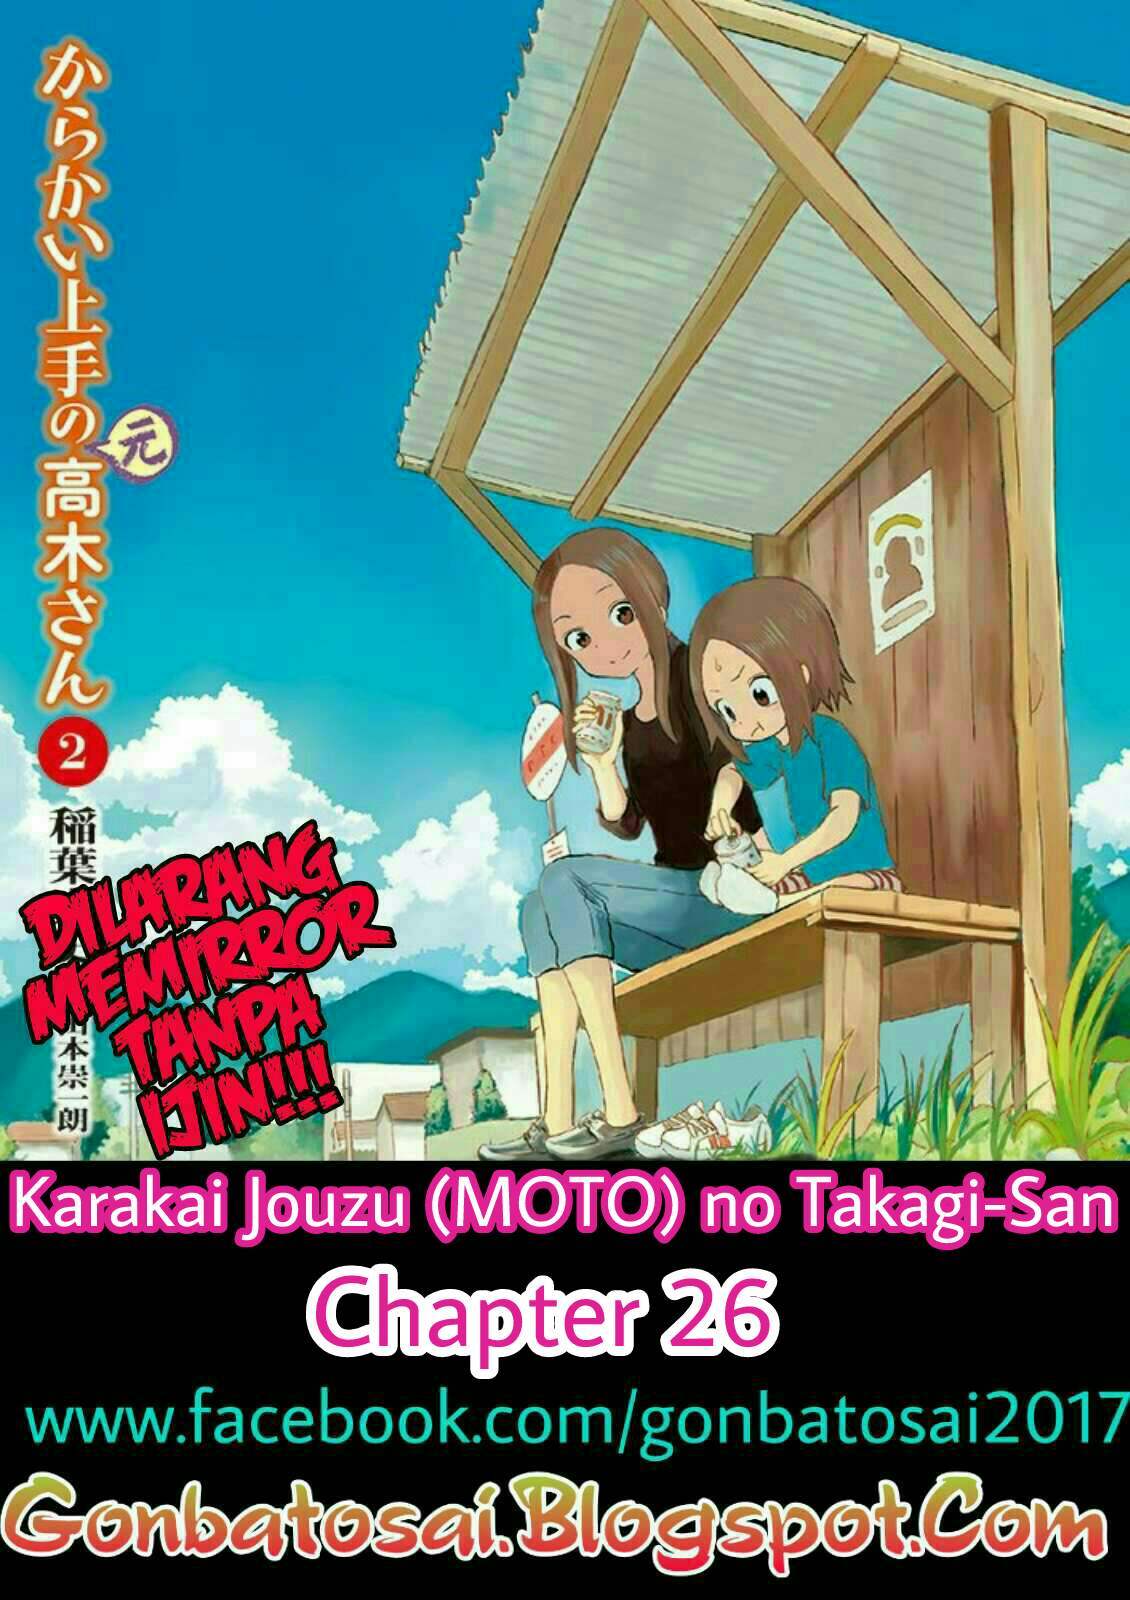 Karakai Jouzu no (Moto) Takagi-san Chapter 26